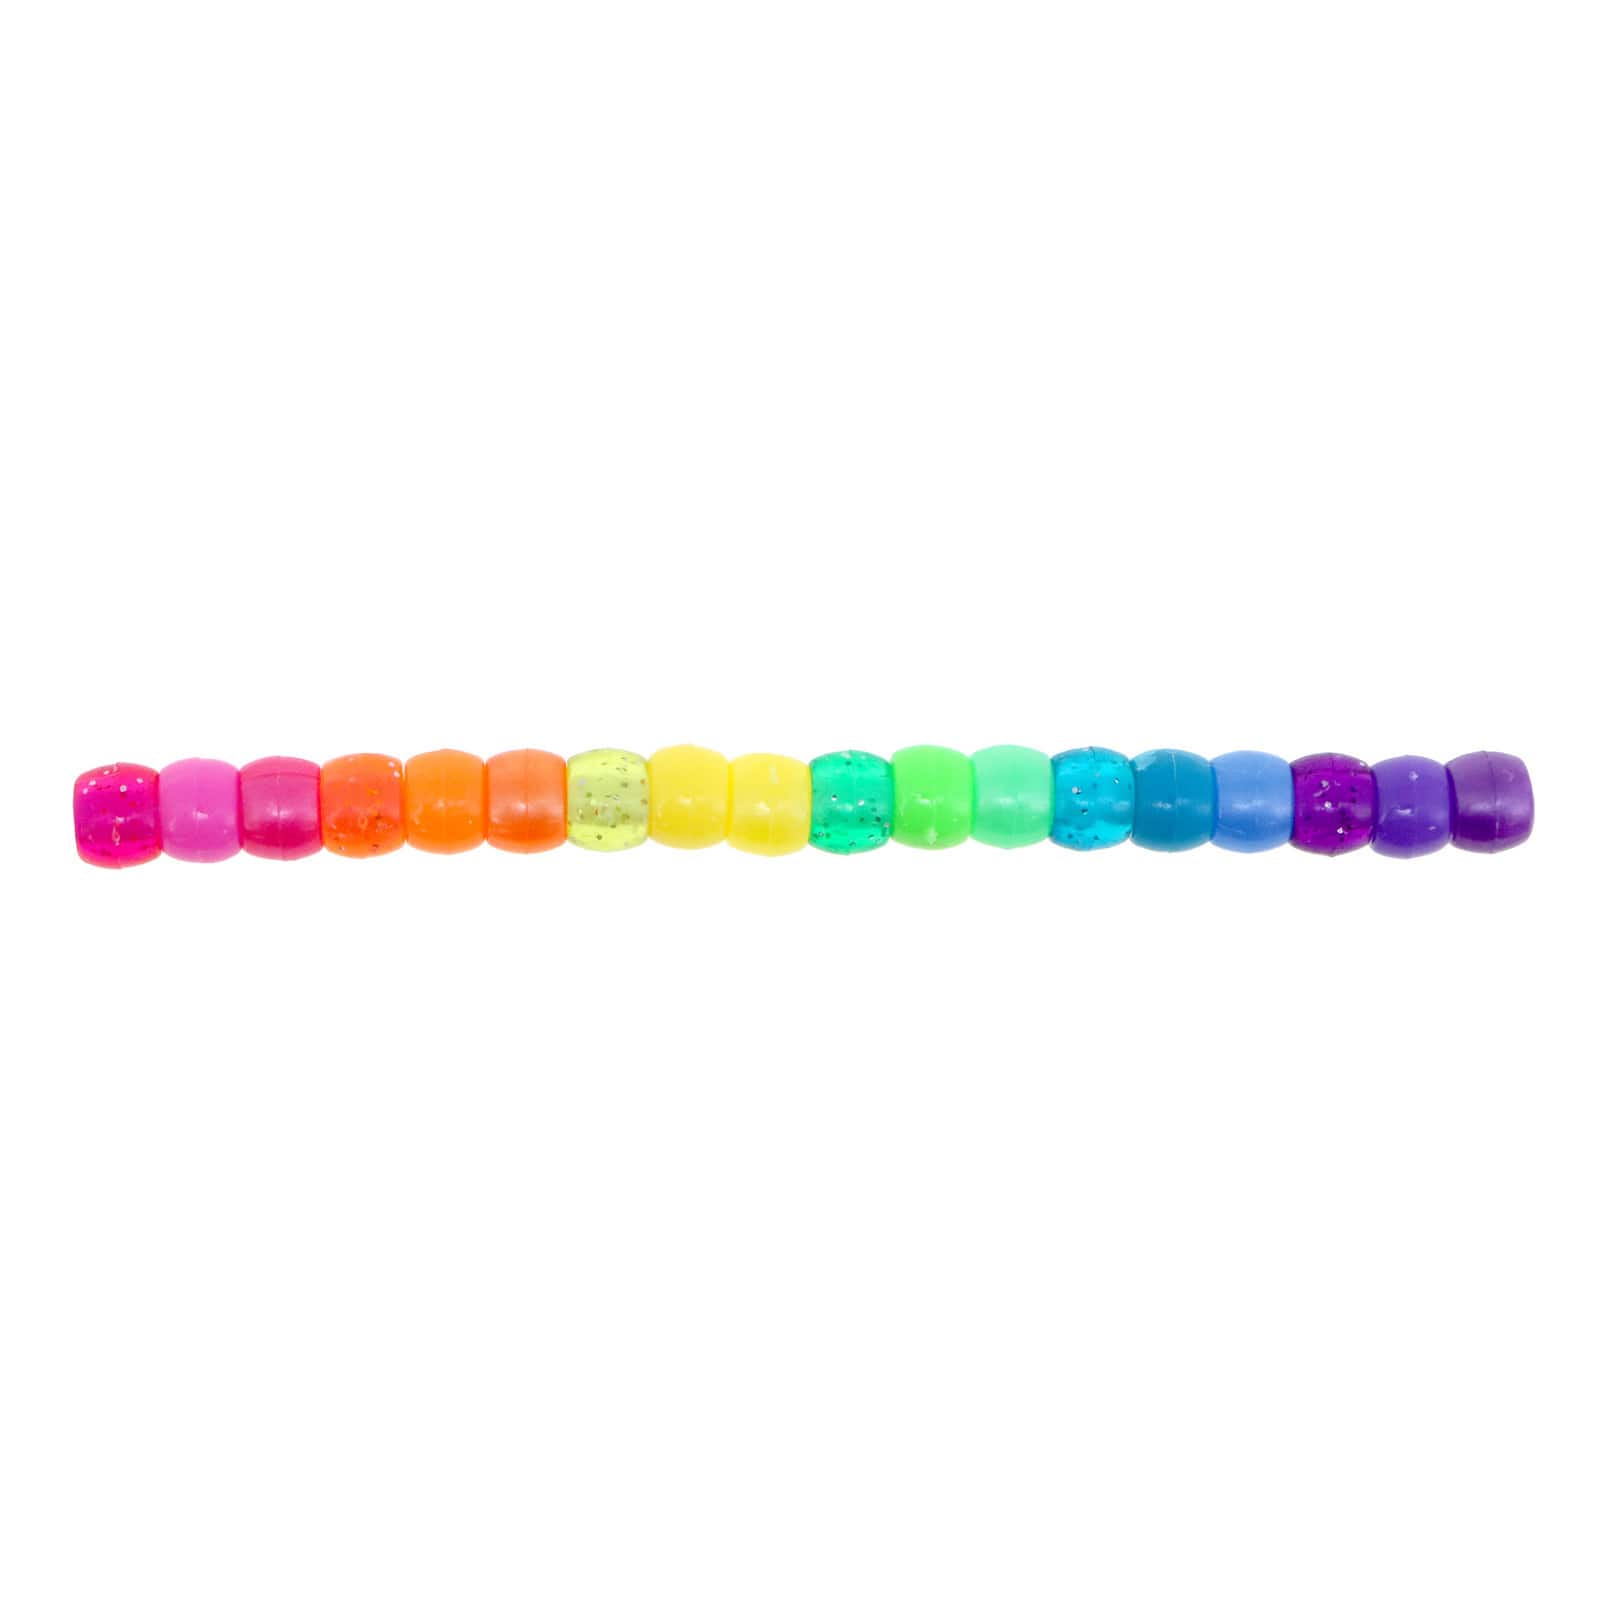 CREATOLOGY Pink Pony Beads .23” x .35” NEW 580 pieces Kids Craft DIY Fun